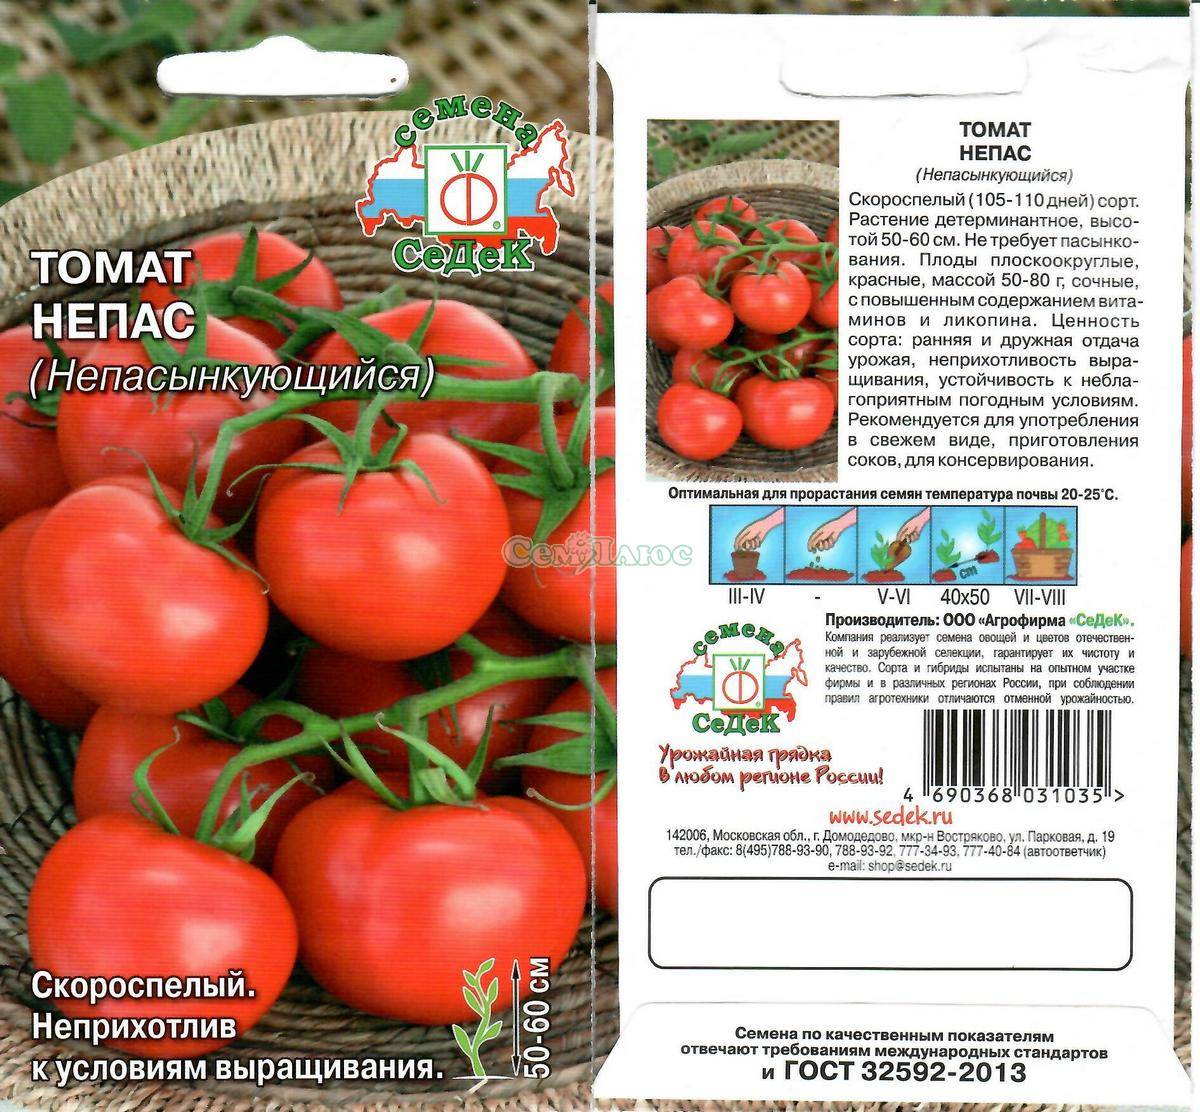 Лучшие низкорослые сорта томатов без пасынкования